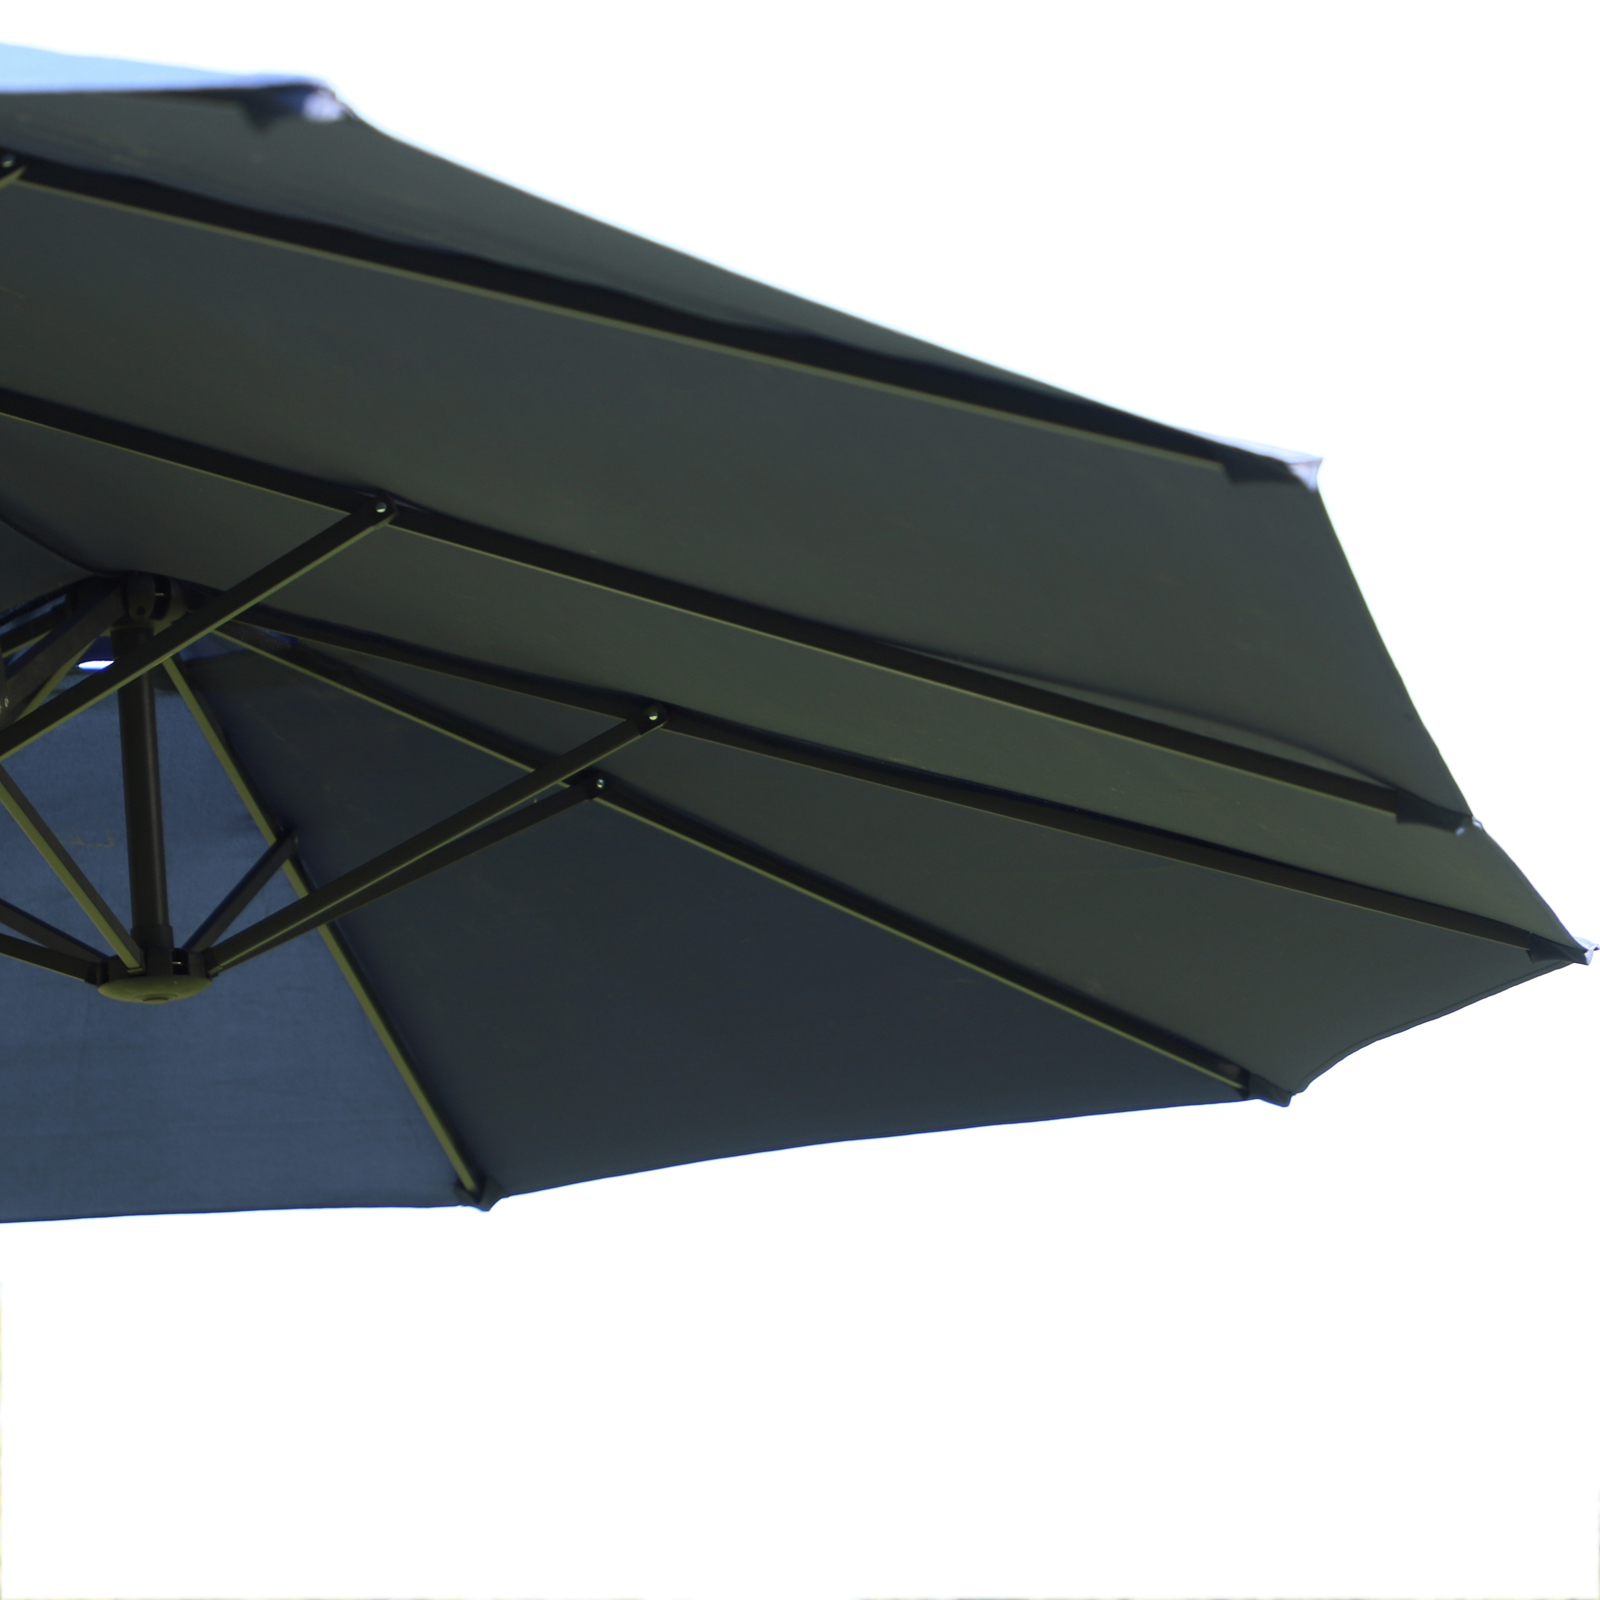 Outsunny 4.6m Garden Parasol Double-Sided Sun Umbrella Patio Market Shelter Canopy Shade Outdoor Blue - NO BASE